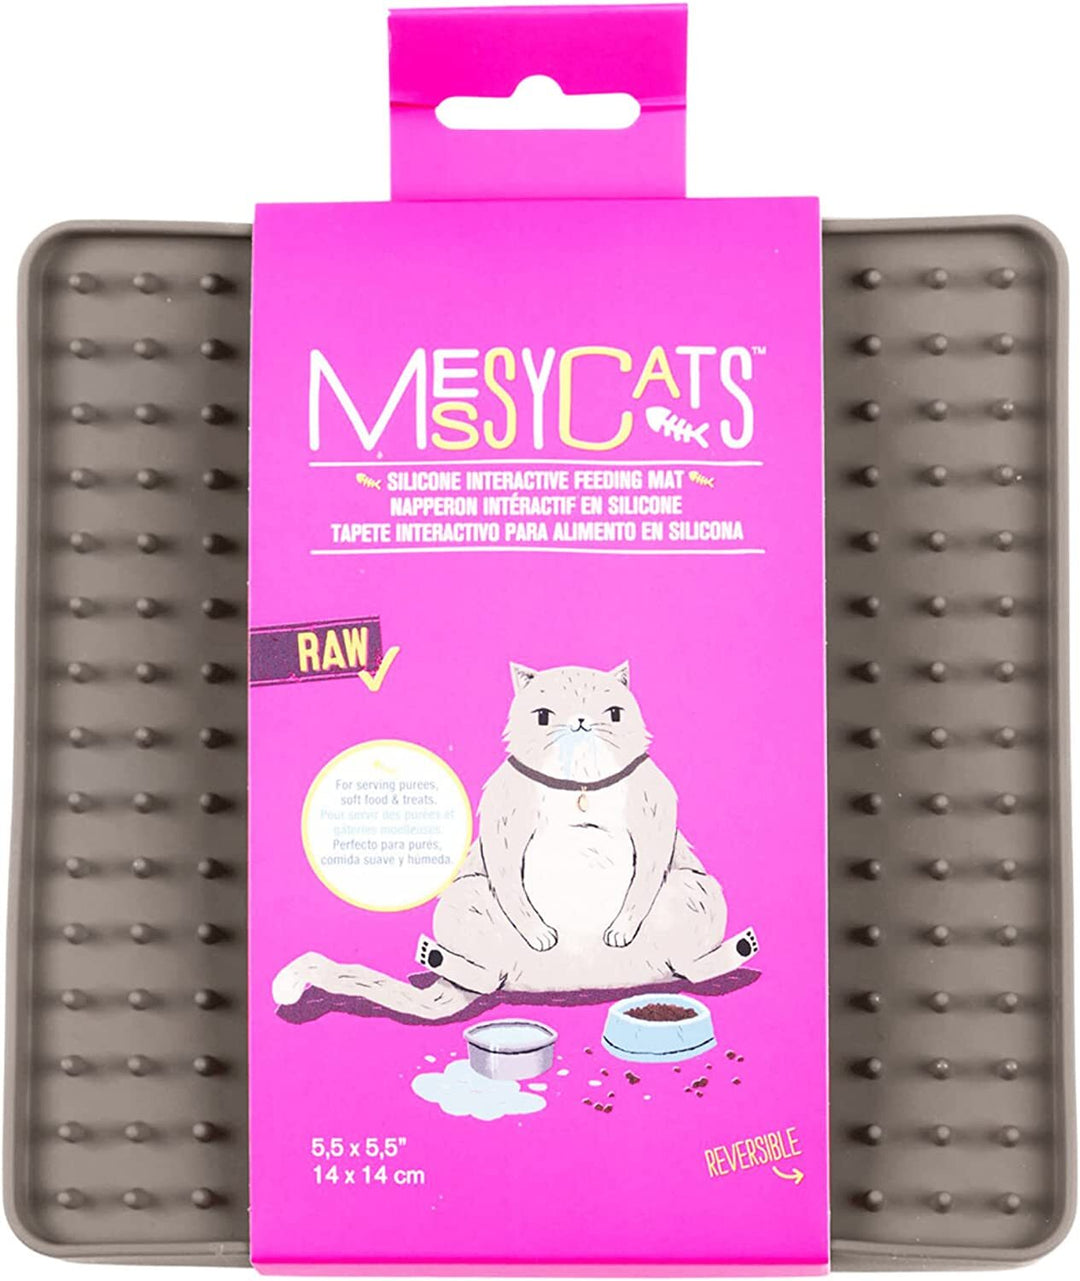 MessyMutts - MessyCats tapis à lécher